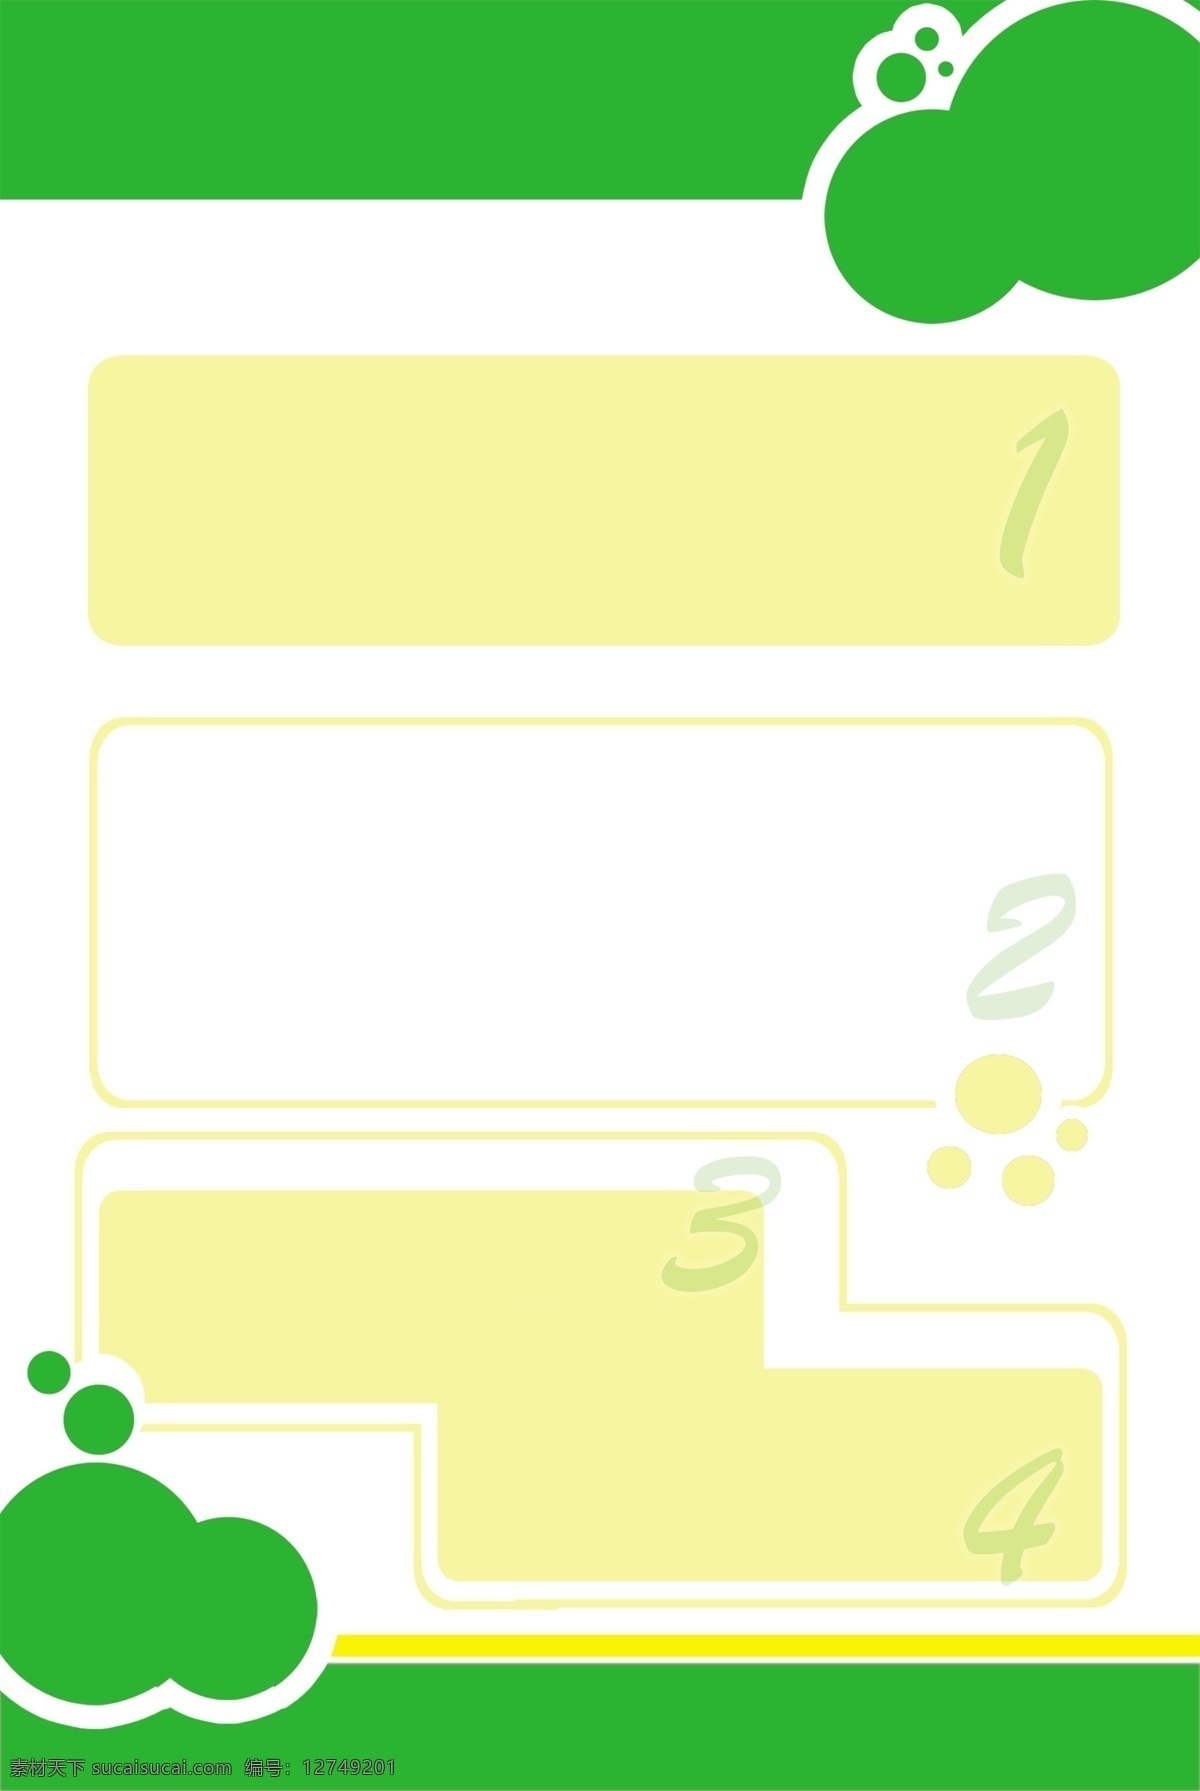 绿色底图 展板底图 绿色小展板 文字框 文字摆放 淡雅展板底图 展板模板 广告设计模板 源文件